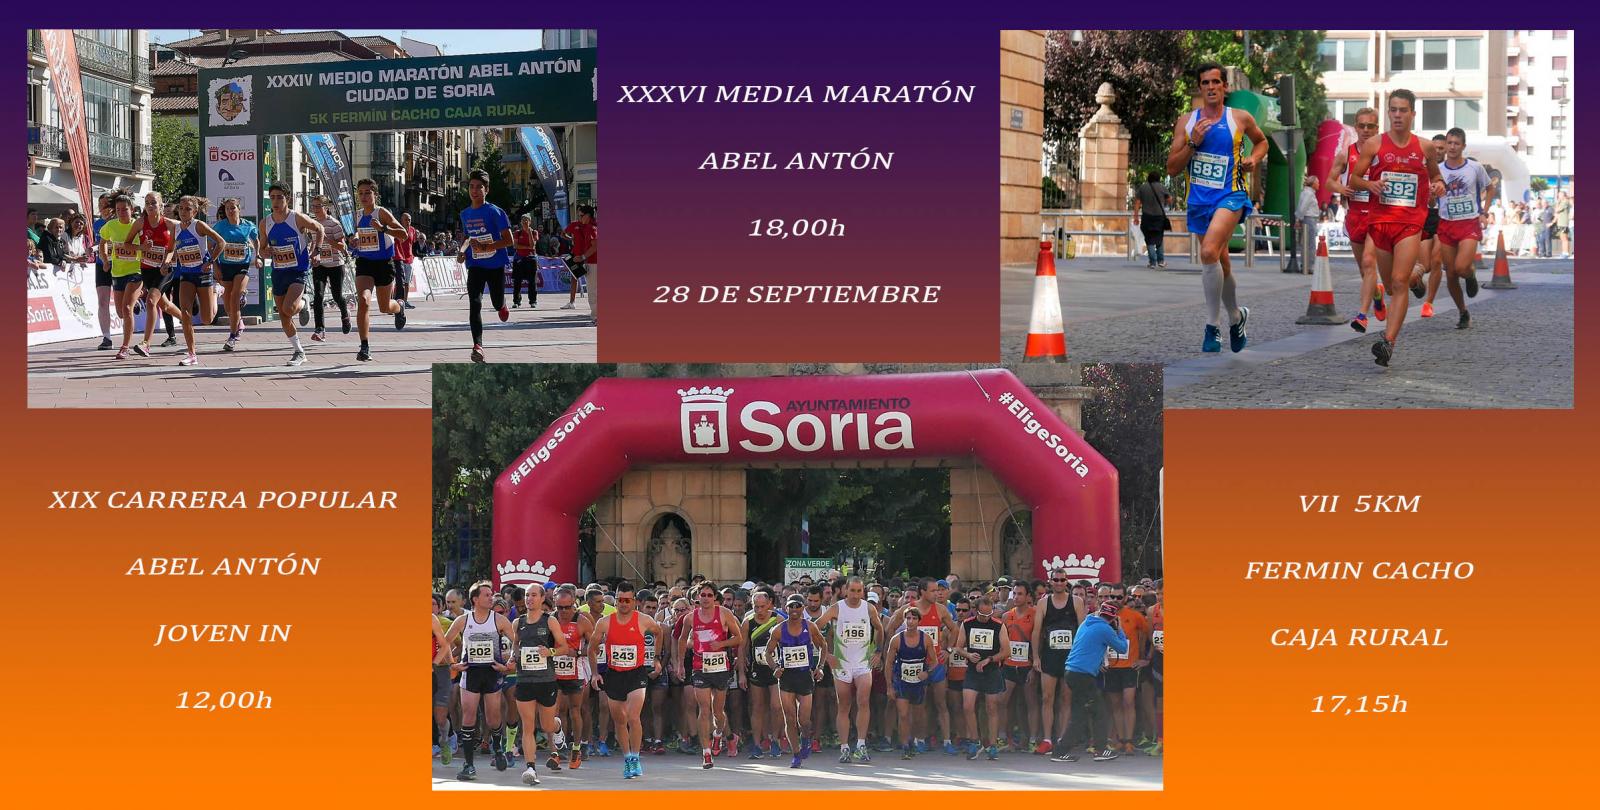 28 de septiembre. atletismo en las calles de Soria